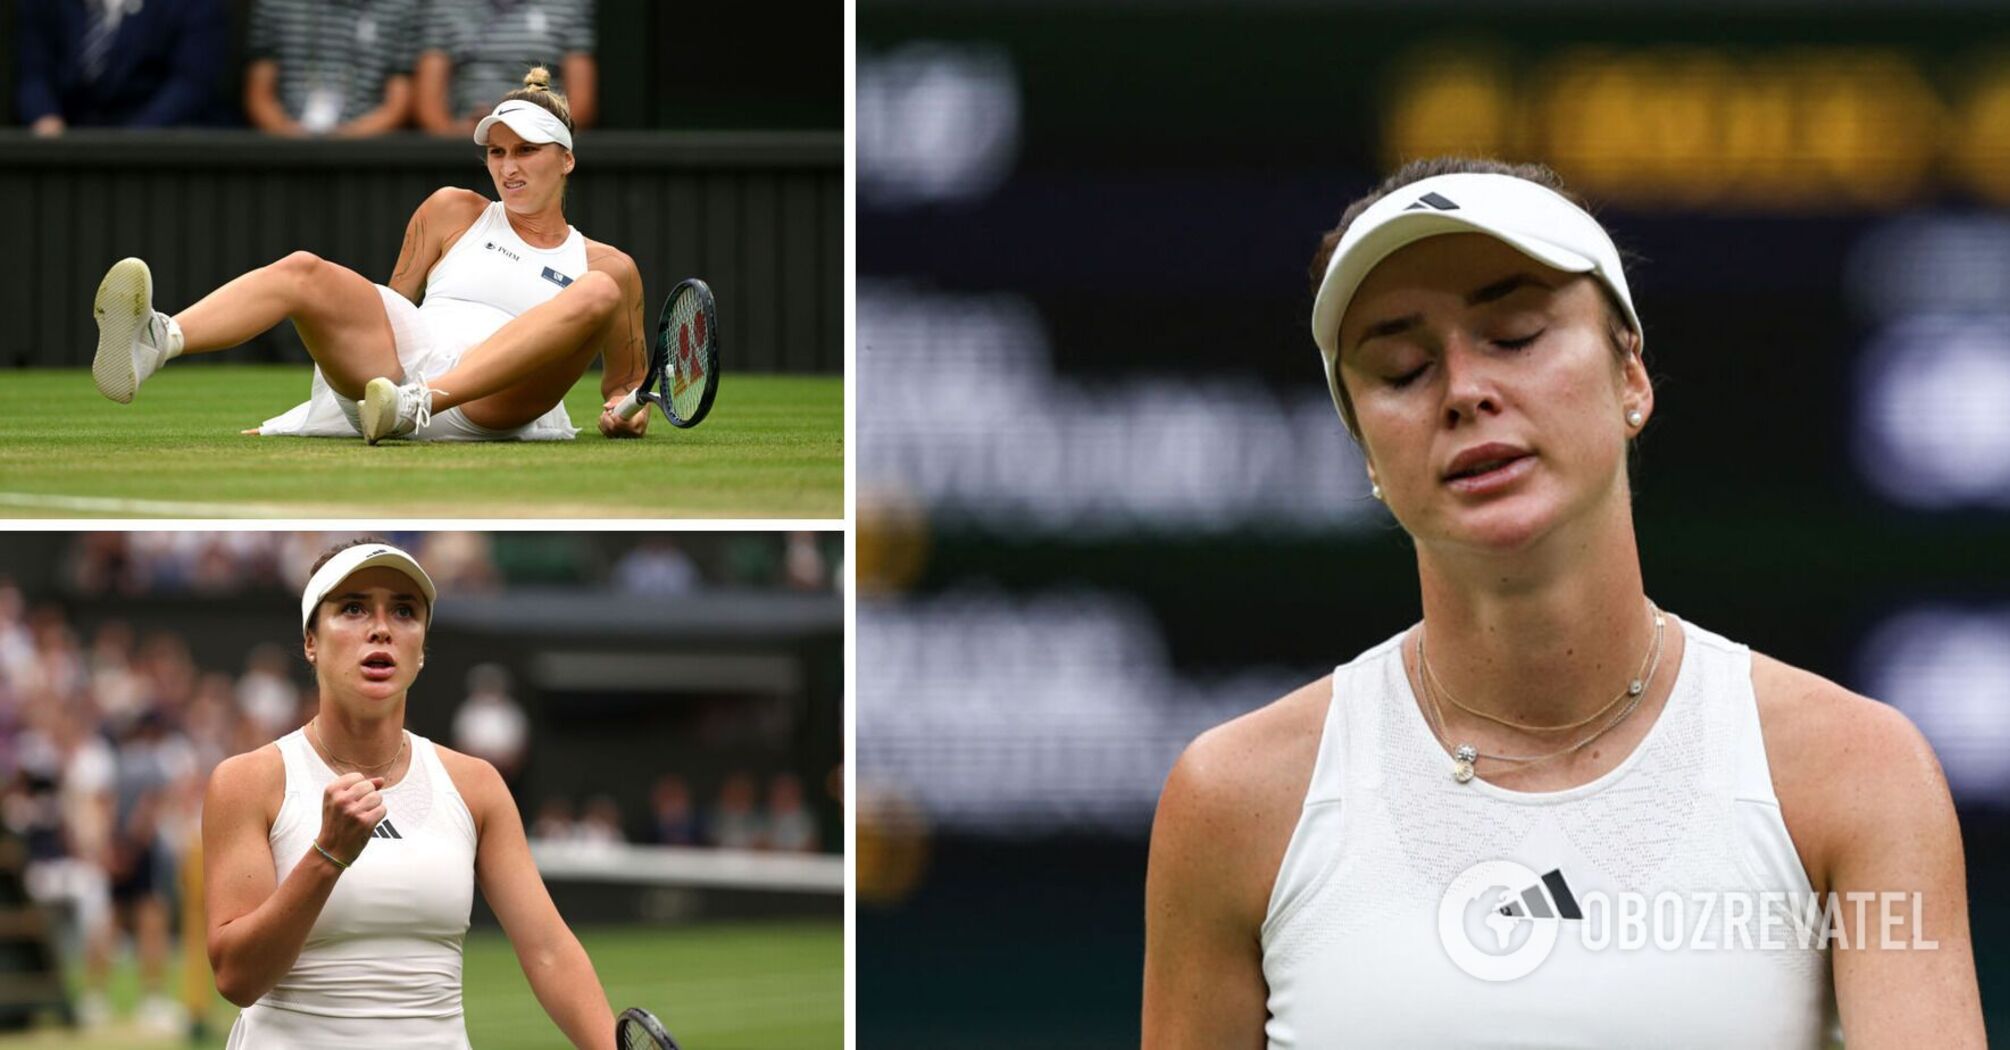 Nie udało jej się powrócić: Switolina nie dotarła do finału Wimbledonu 2023